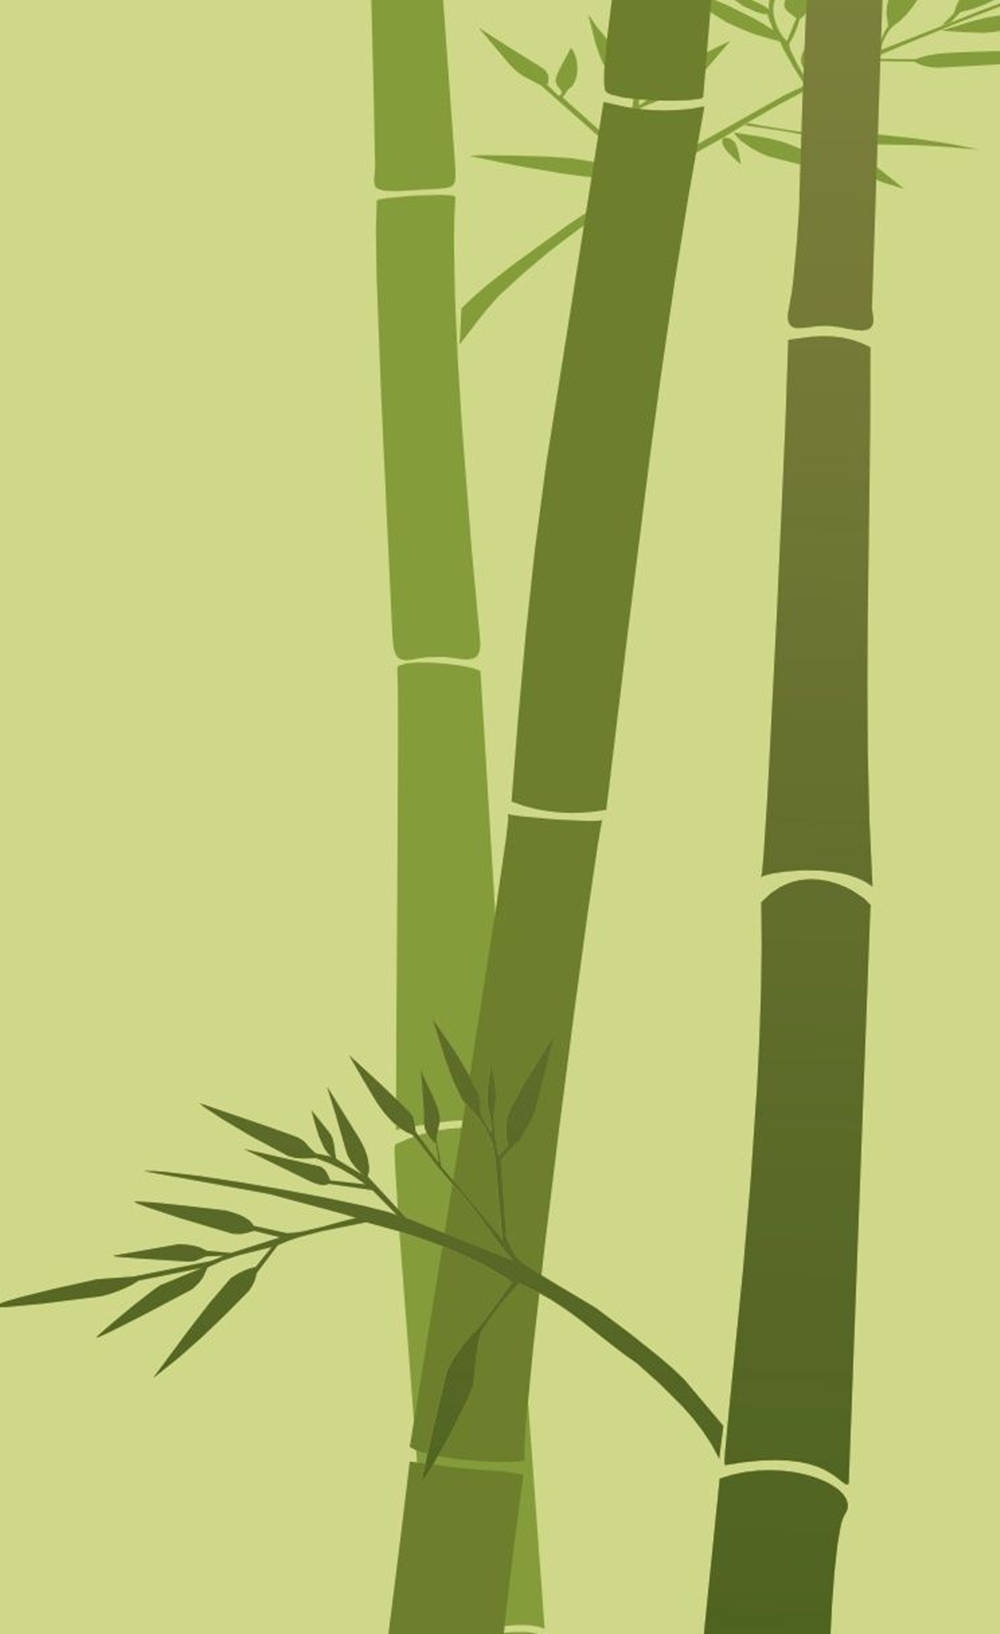 Elegant Minimalist Bamboo Art On Iphone